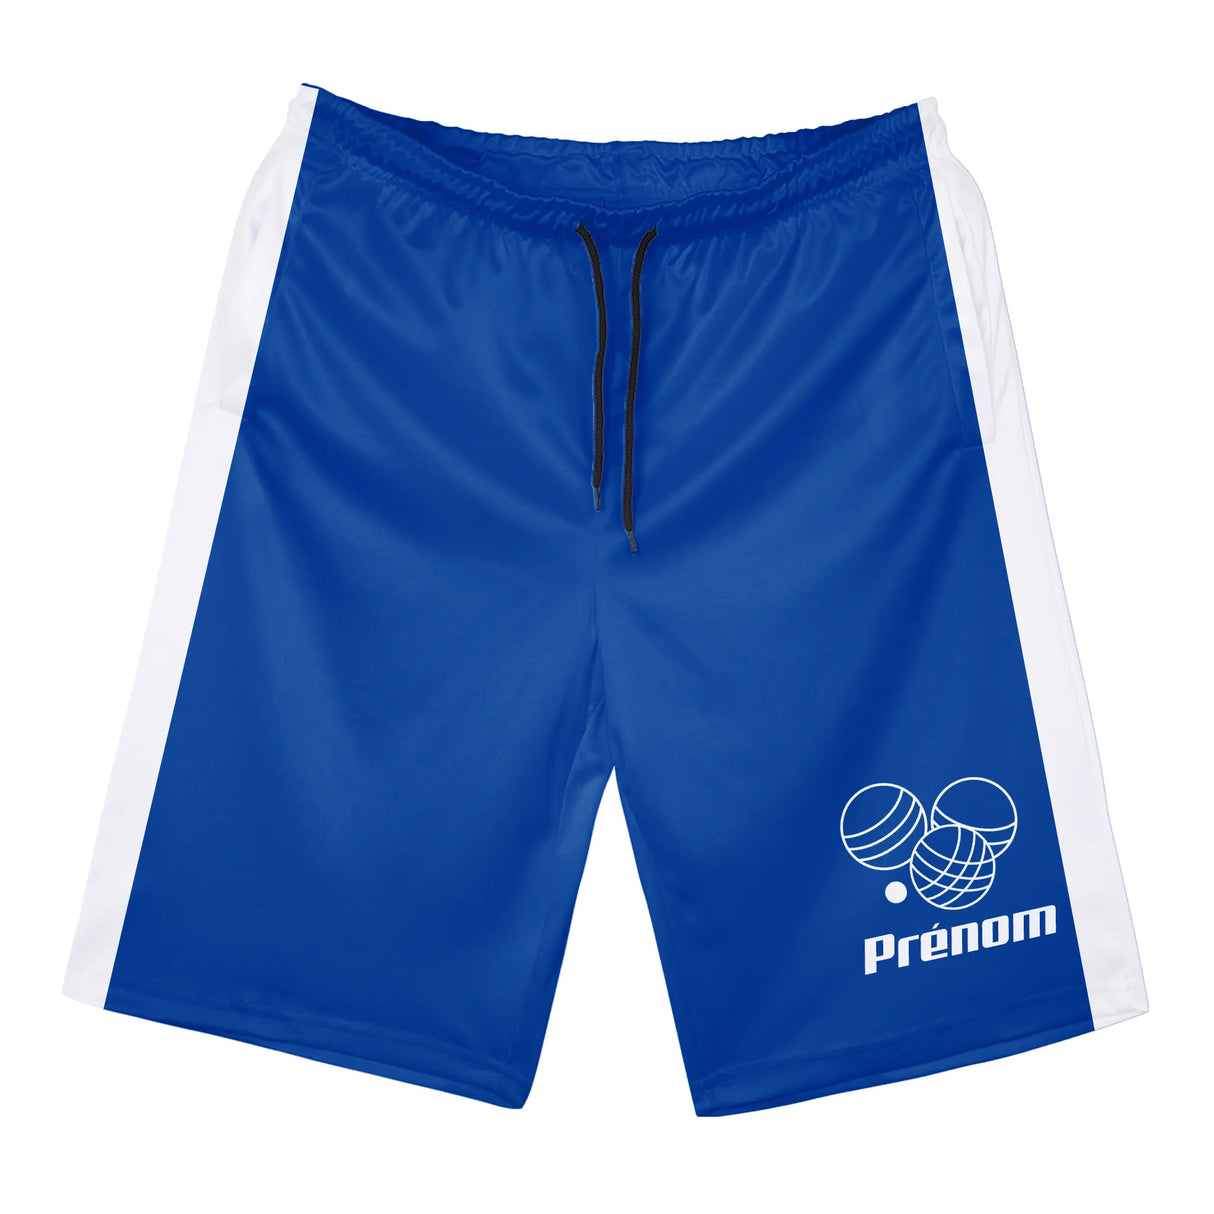 Shorts de Sport Prénom – Confort et Style pour Chaque Match - A010724N36 - Bleu Royal